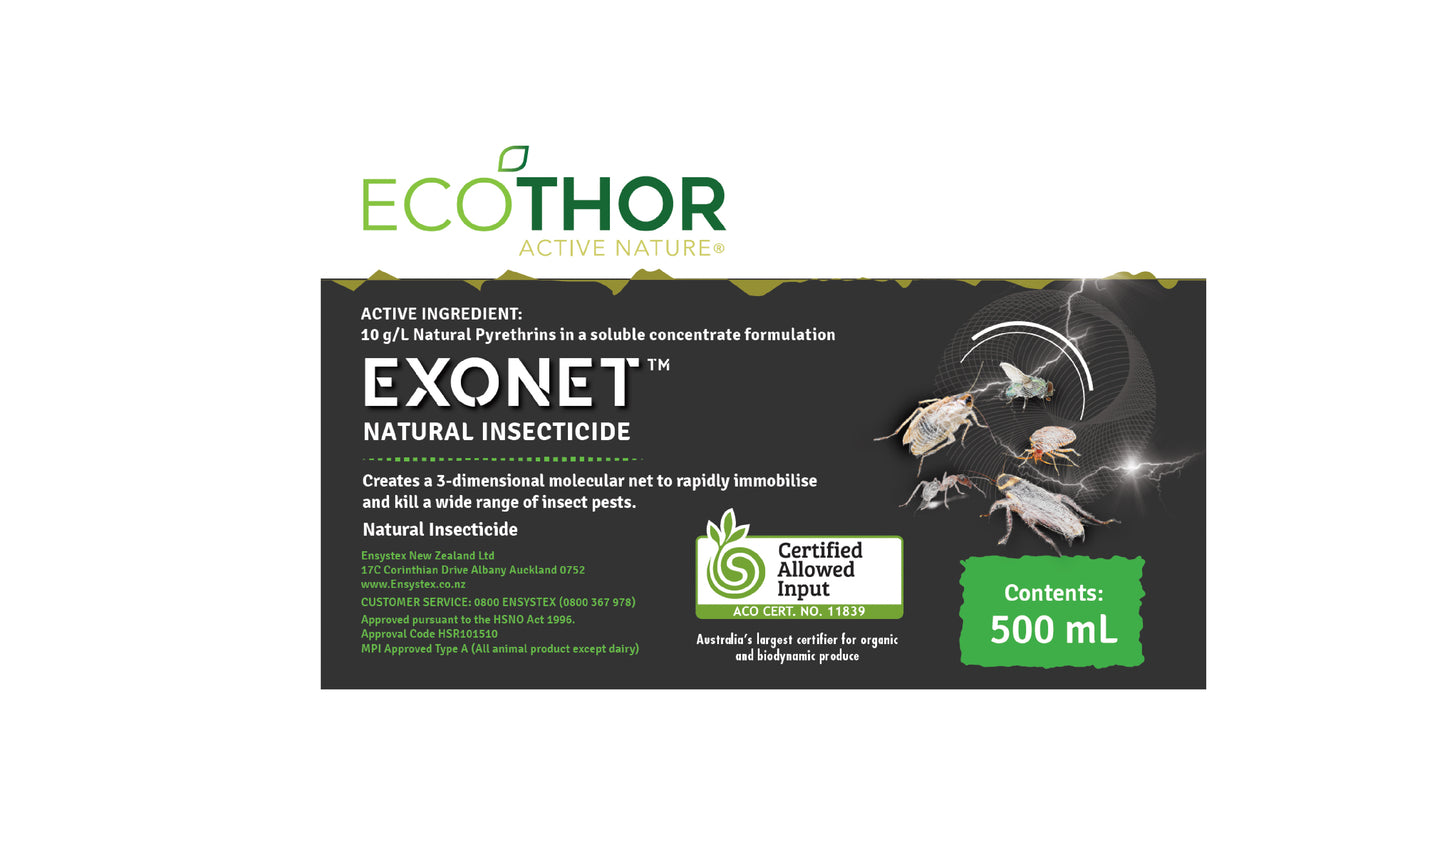 ECOTHOR ACTIVE NATURE® EXONET™